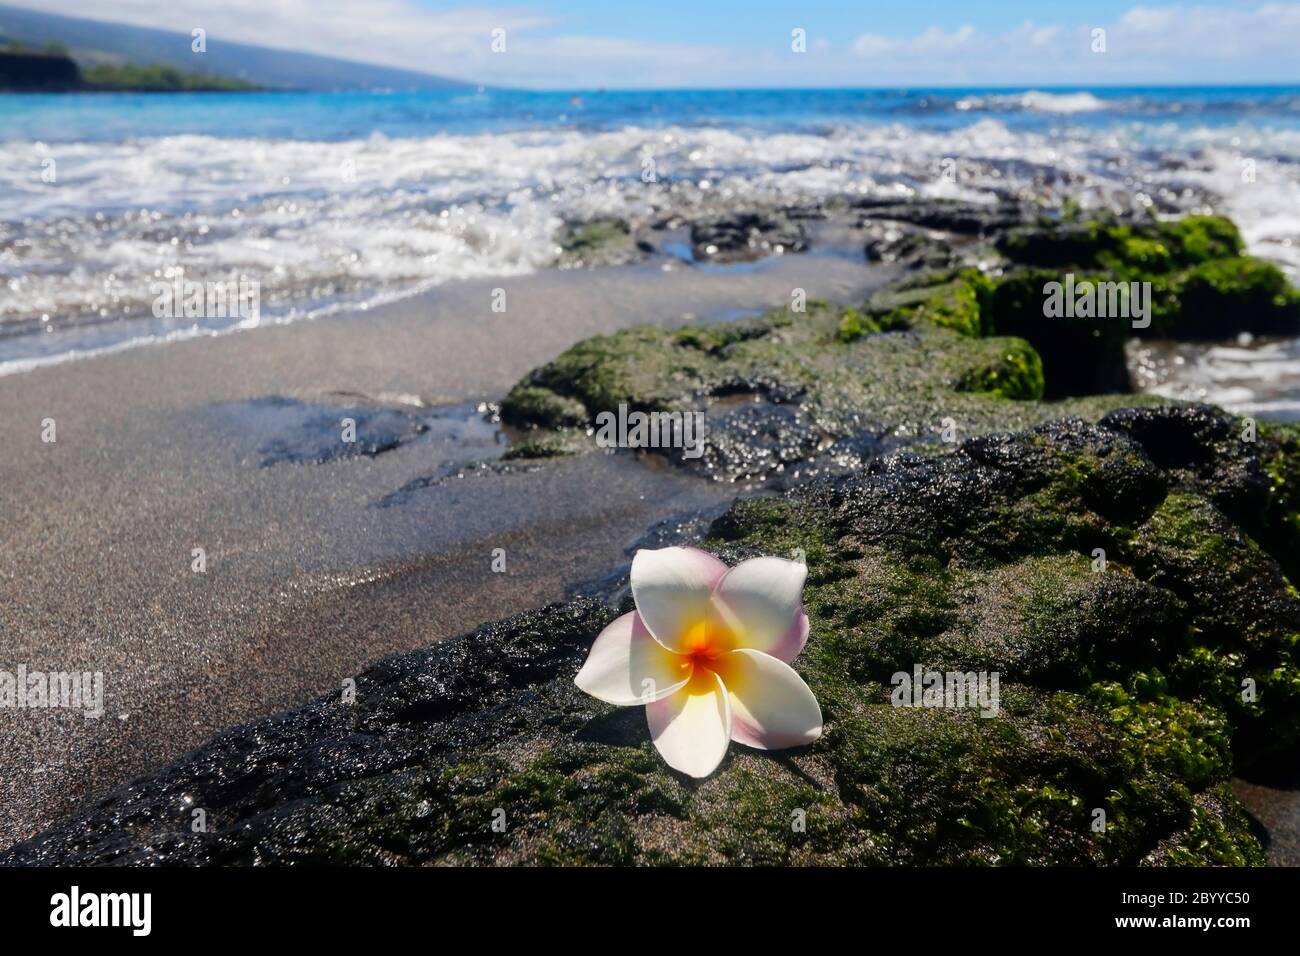 Vue panoramique avec fleur de frangipani blanche sur la pierre de lave noire dans la plage de l'océan pacifique hors de fond de foyer. Hawaï Big Island, États-Unis. Banque D'Images